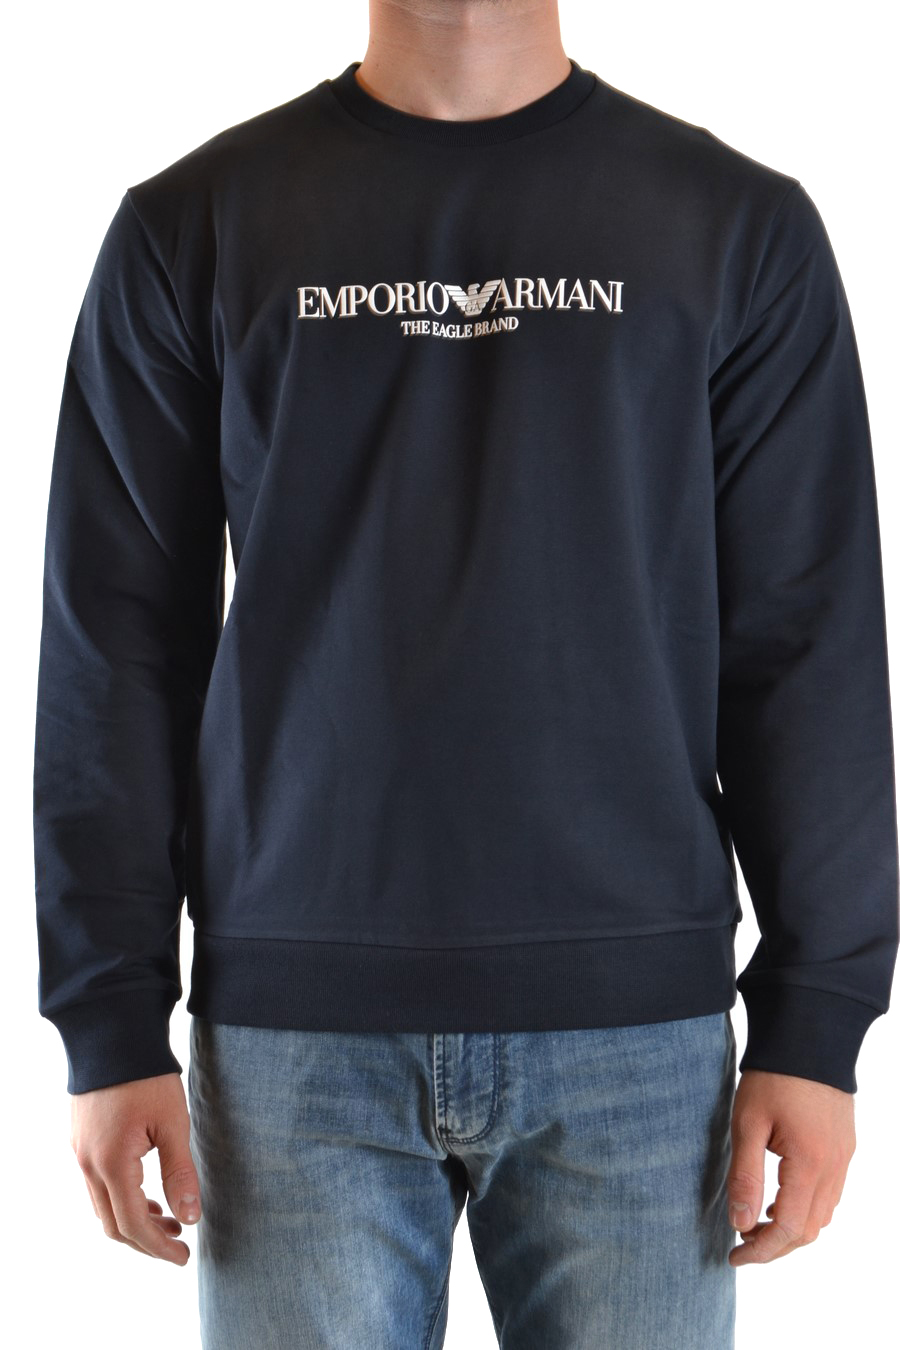 EMPORIO ARMANI Sweatshirts | ViganoBoutique.com